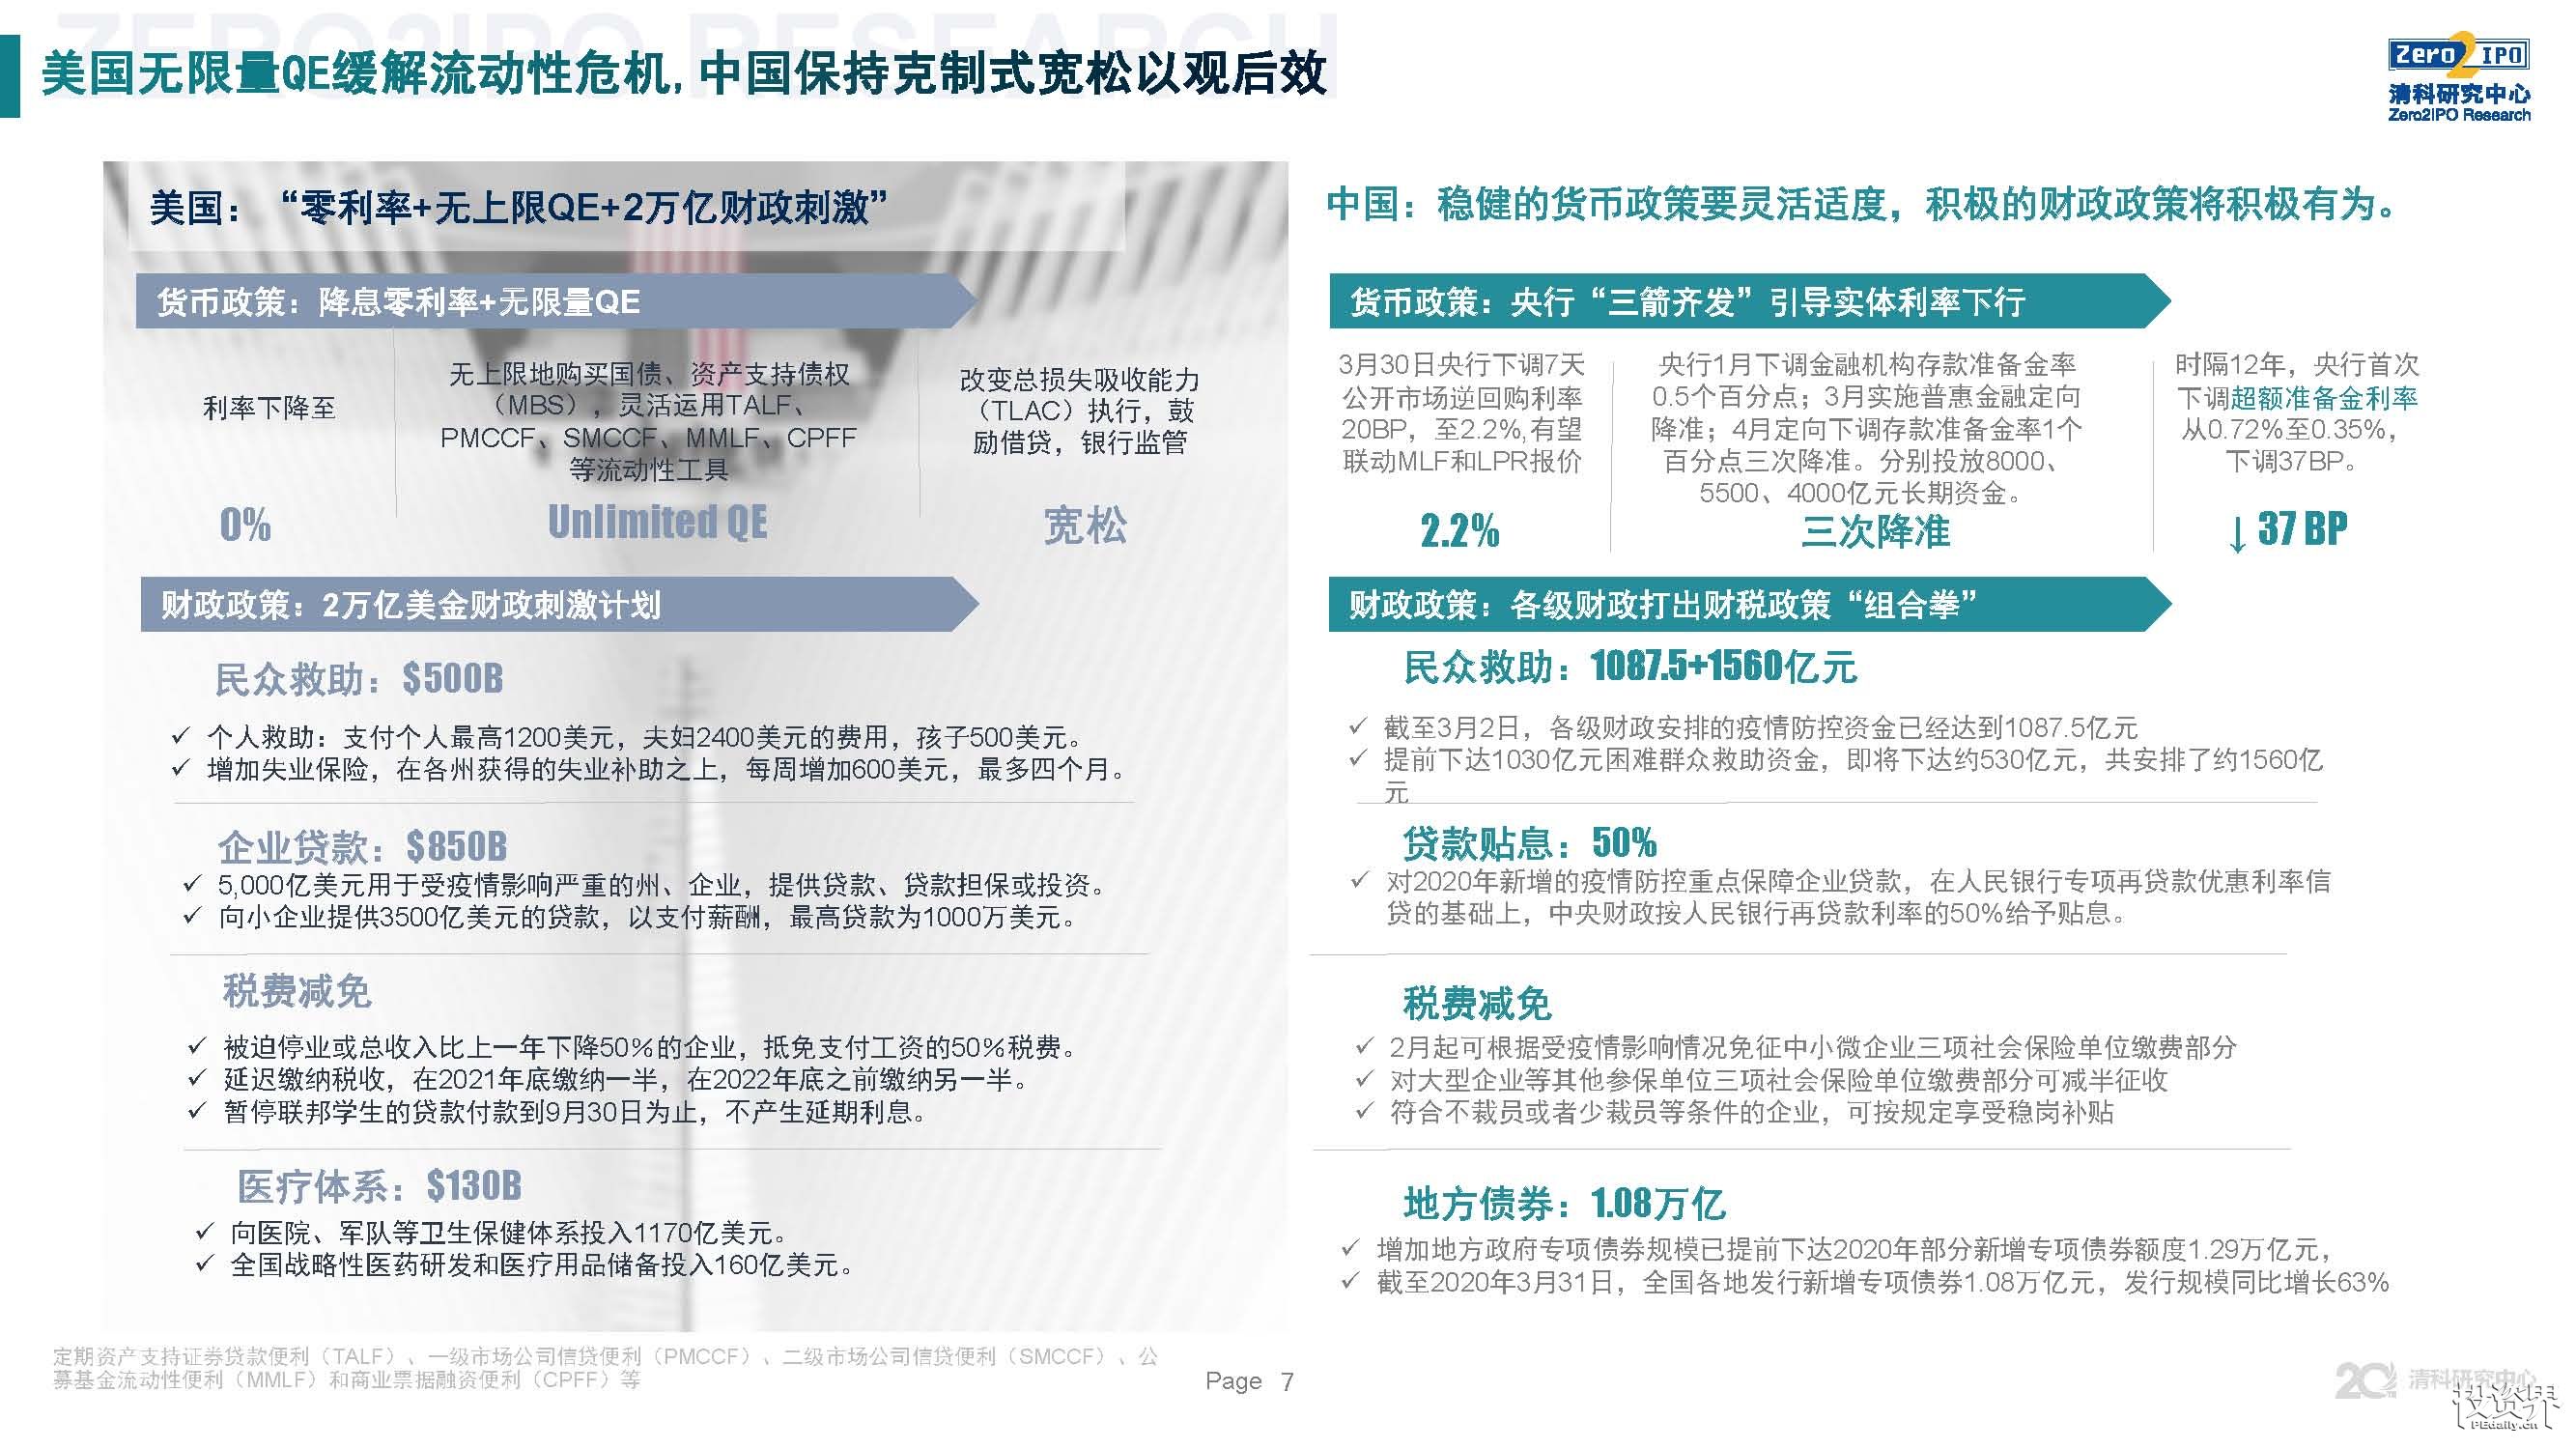 2020年第一季度中国股权投资市场回顾与展望